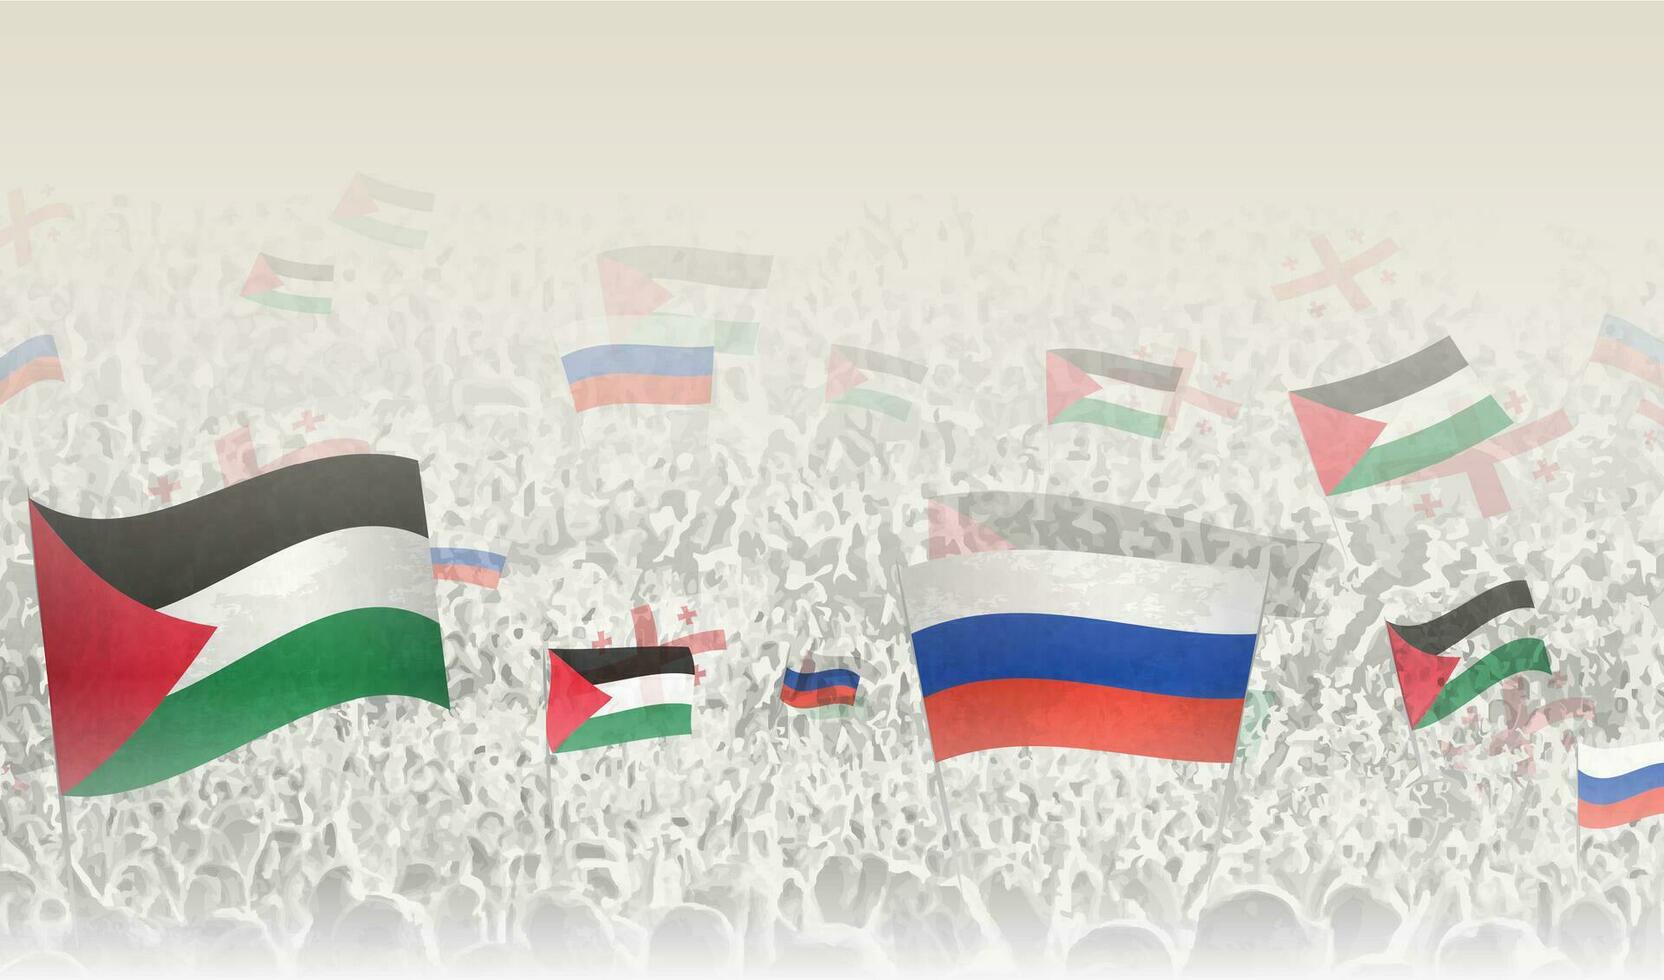 Palestine et Russie drapeaux dans une foule de applaudissement personnes. vecteur